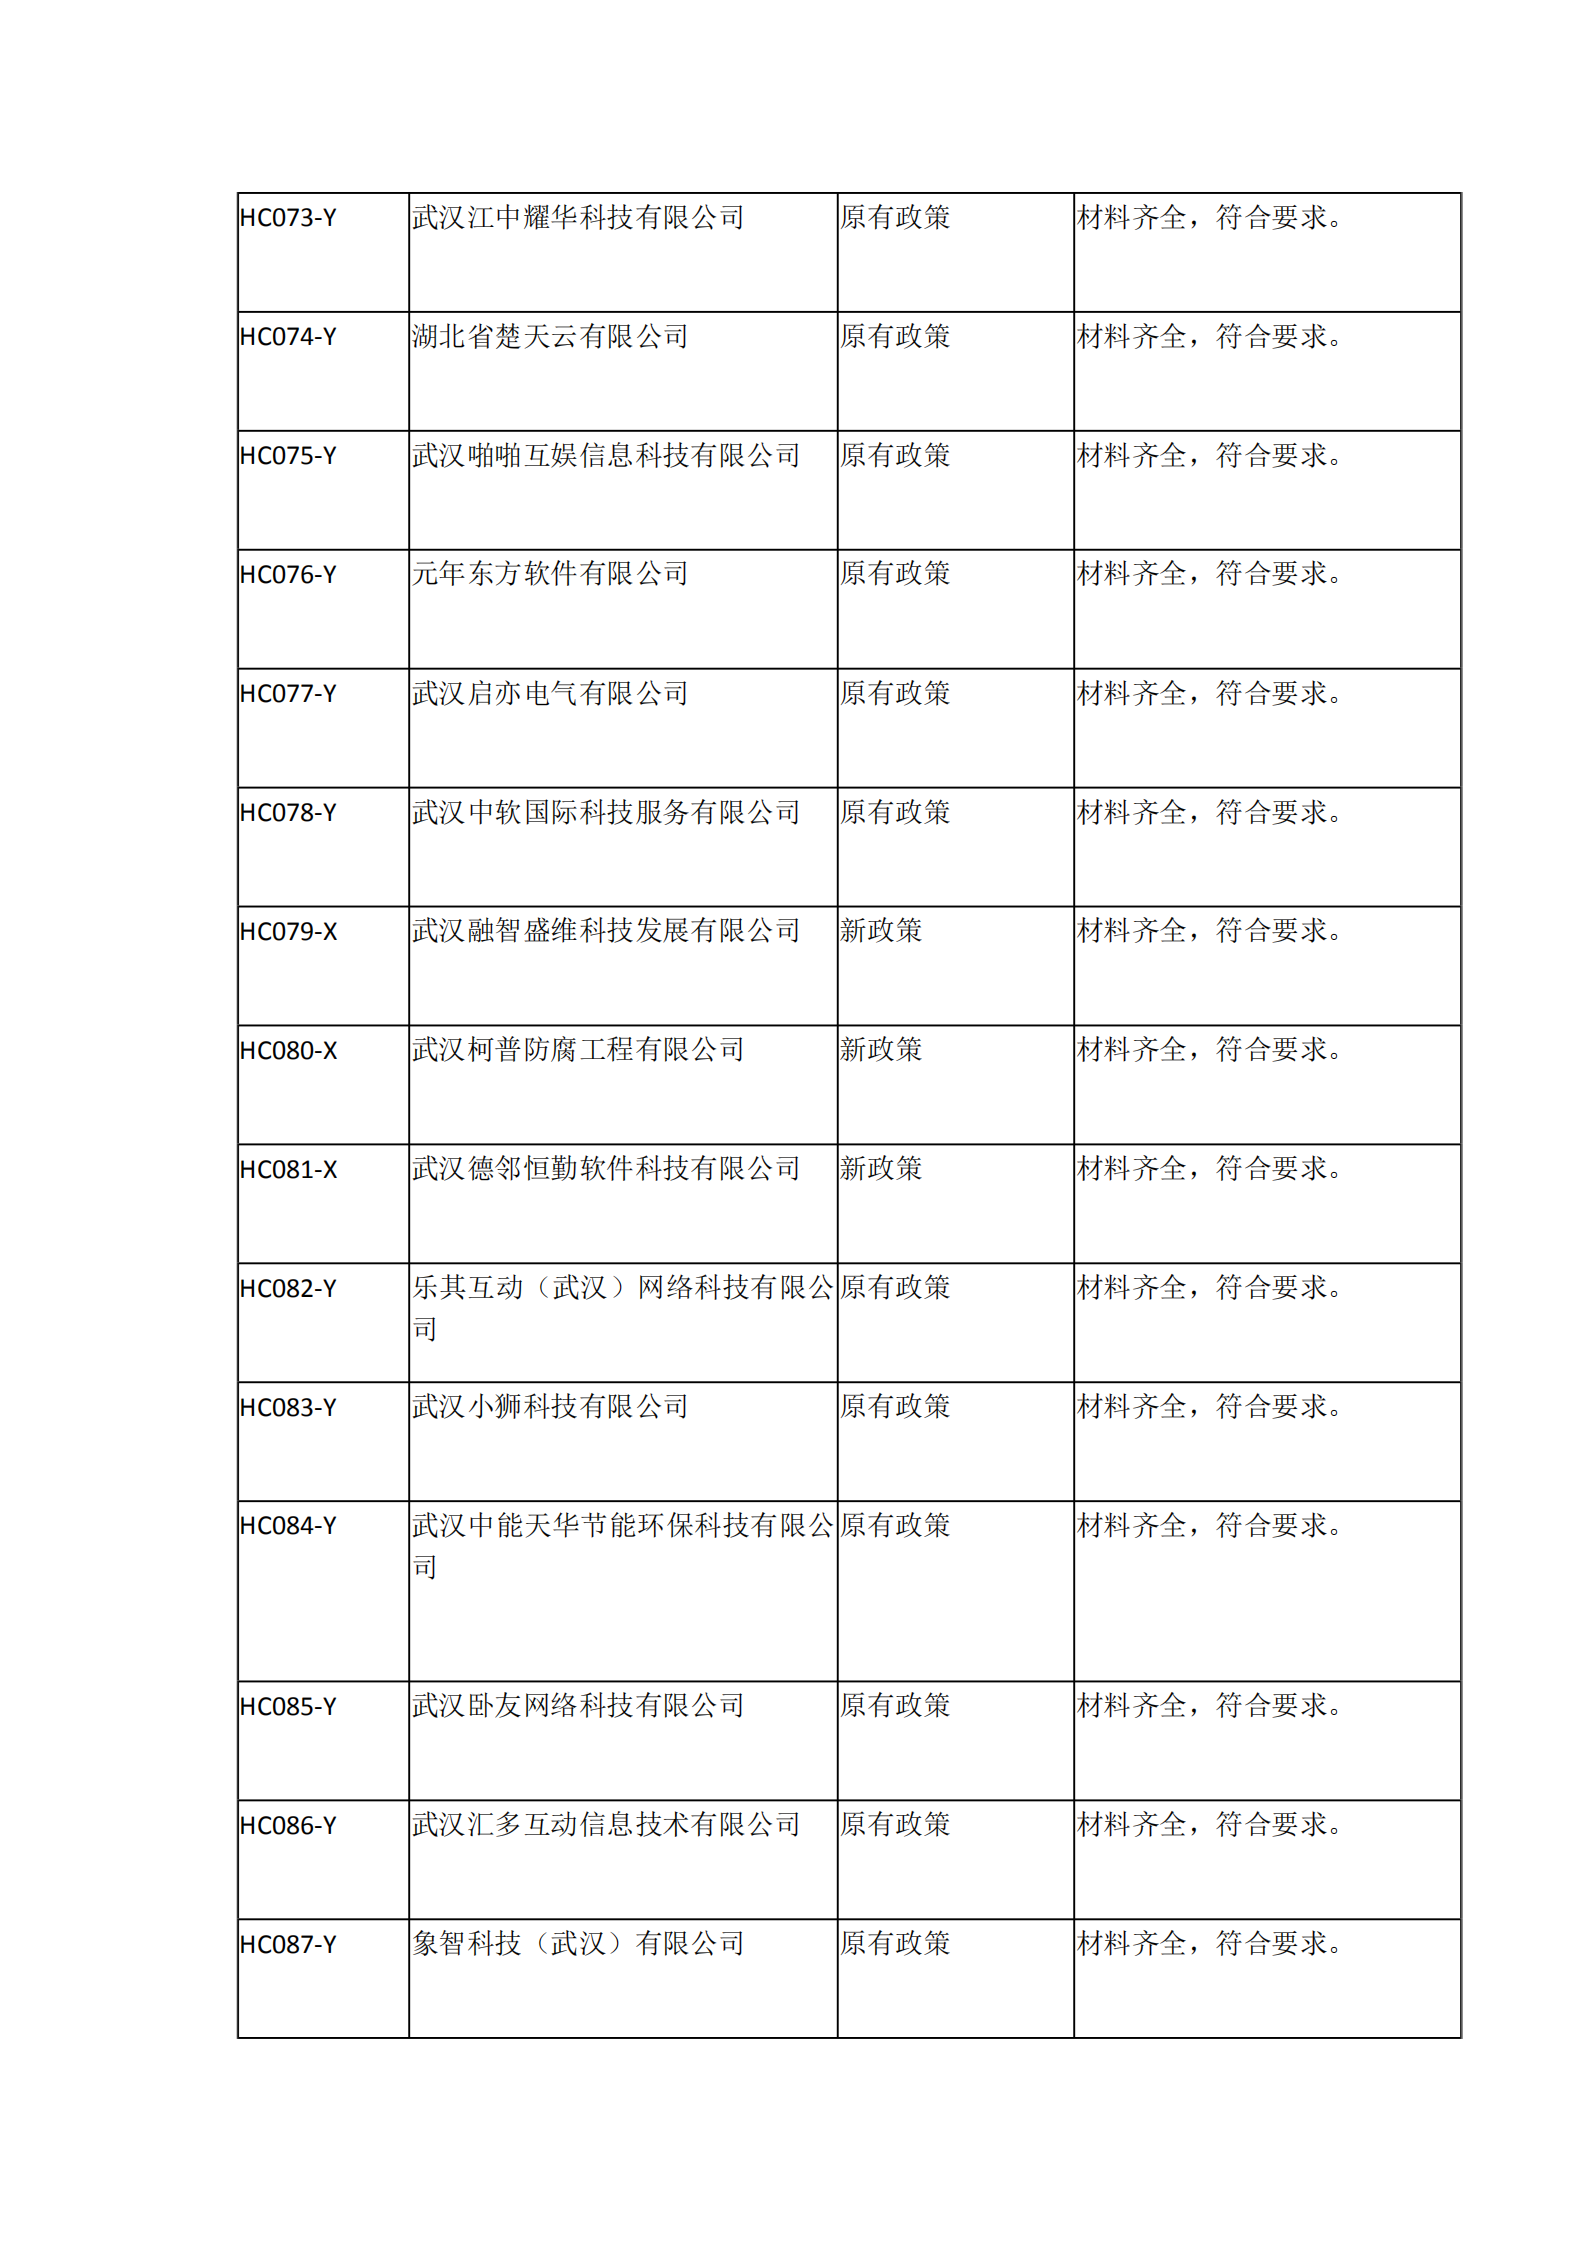 2021年湖北省软件企业所得税优惠备案资料核查情况表_05.png